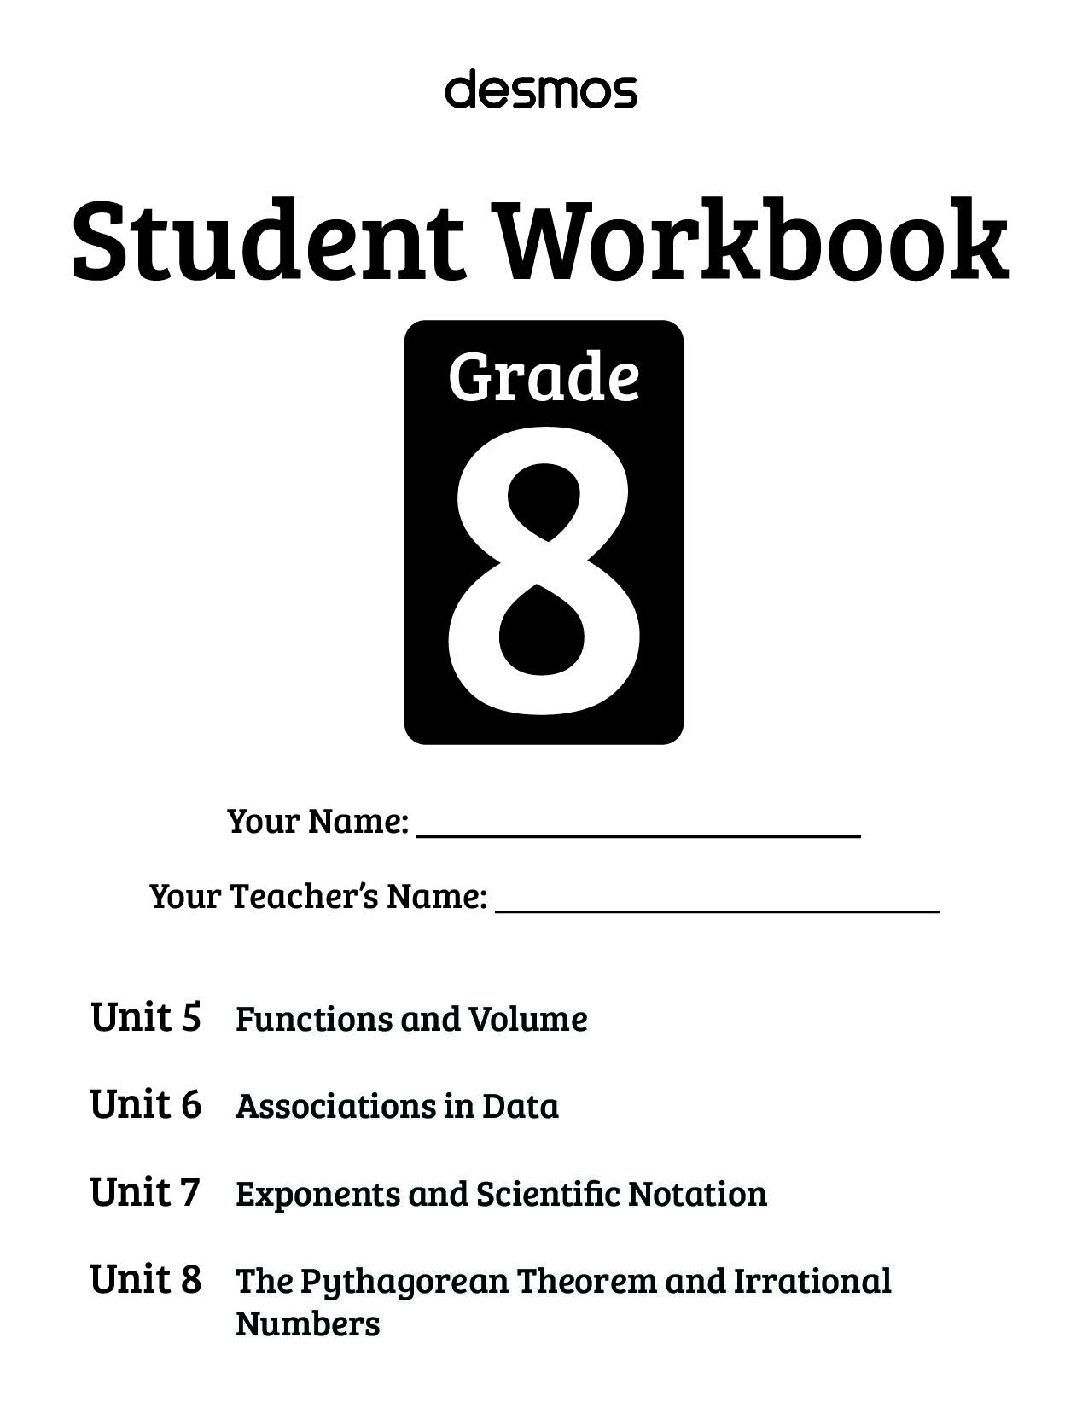 Desmos Student Workbook Gr8 (8.5-8.8)